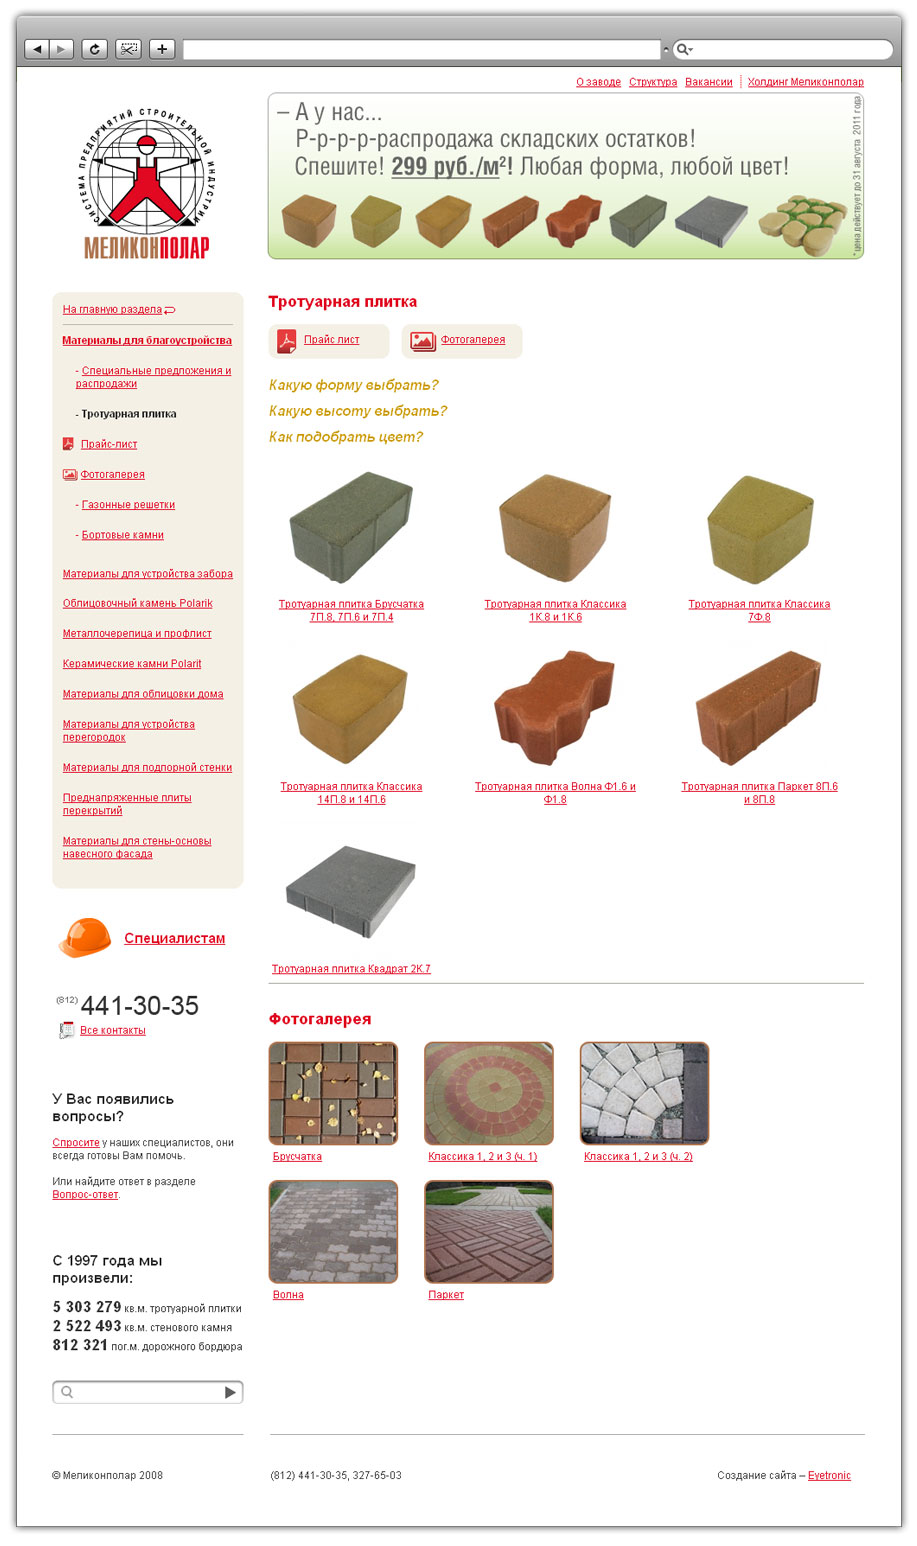 Разработка сайта для многопрофильного холдинга, занимающегося строительными материалами и девелопментом «Меликонполар» - 4